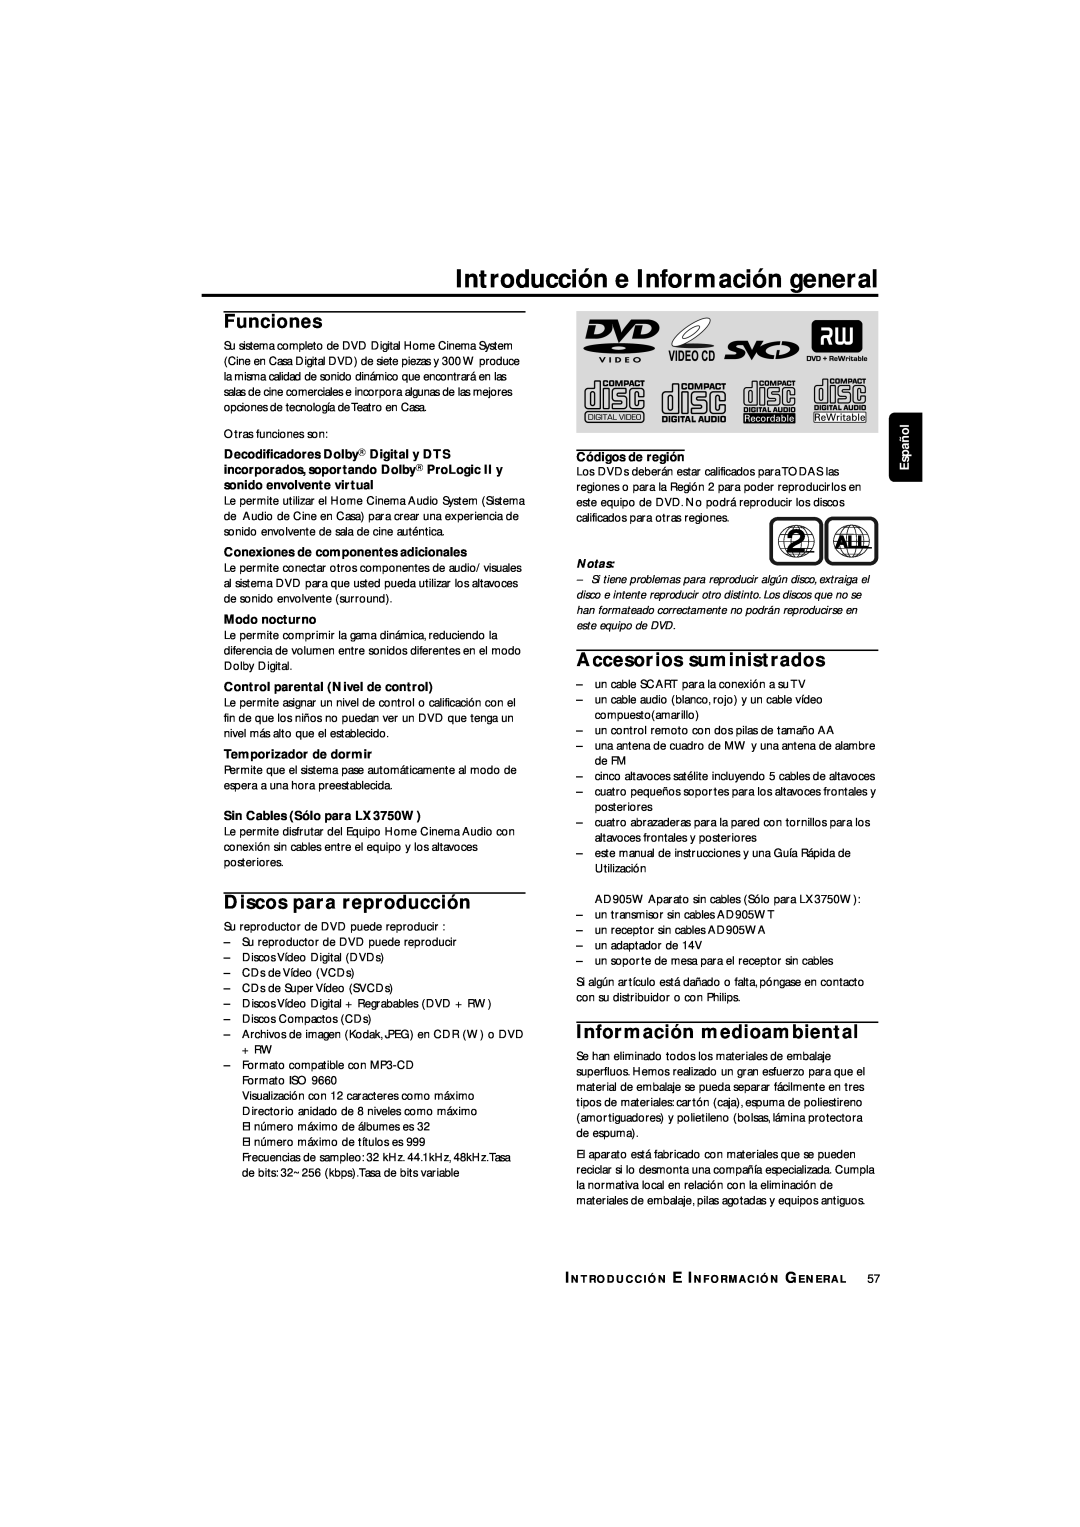 Philips LX3700D Introducción e Información general, Funciones, Discos para reproducción, Accesorios suministrados, 2 ALL 